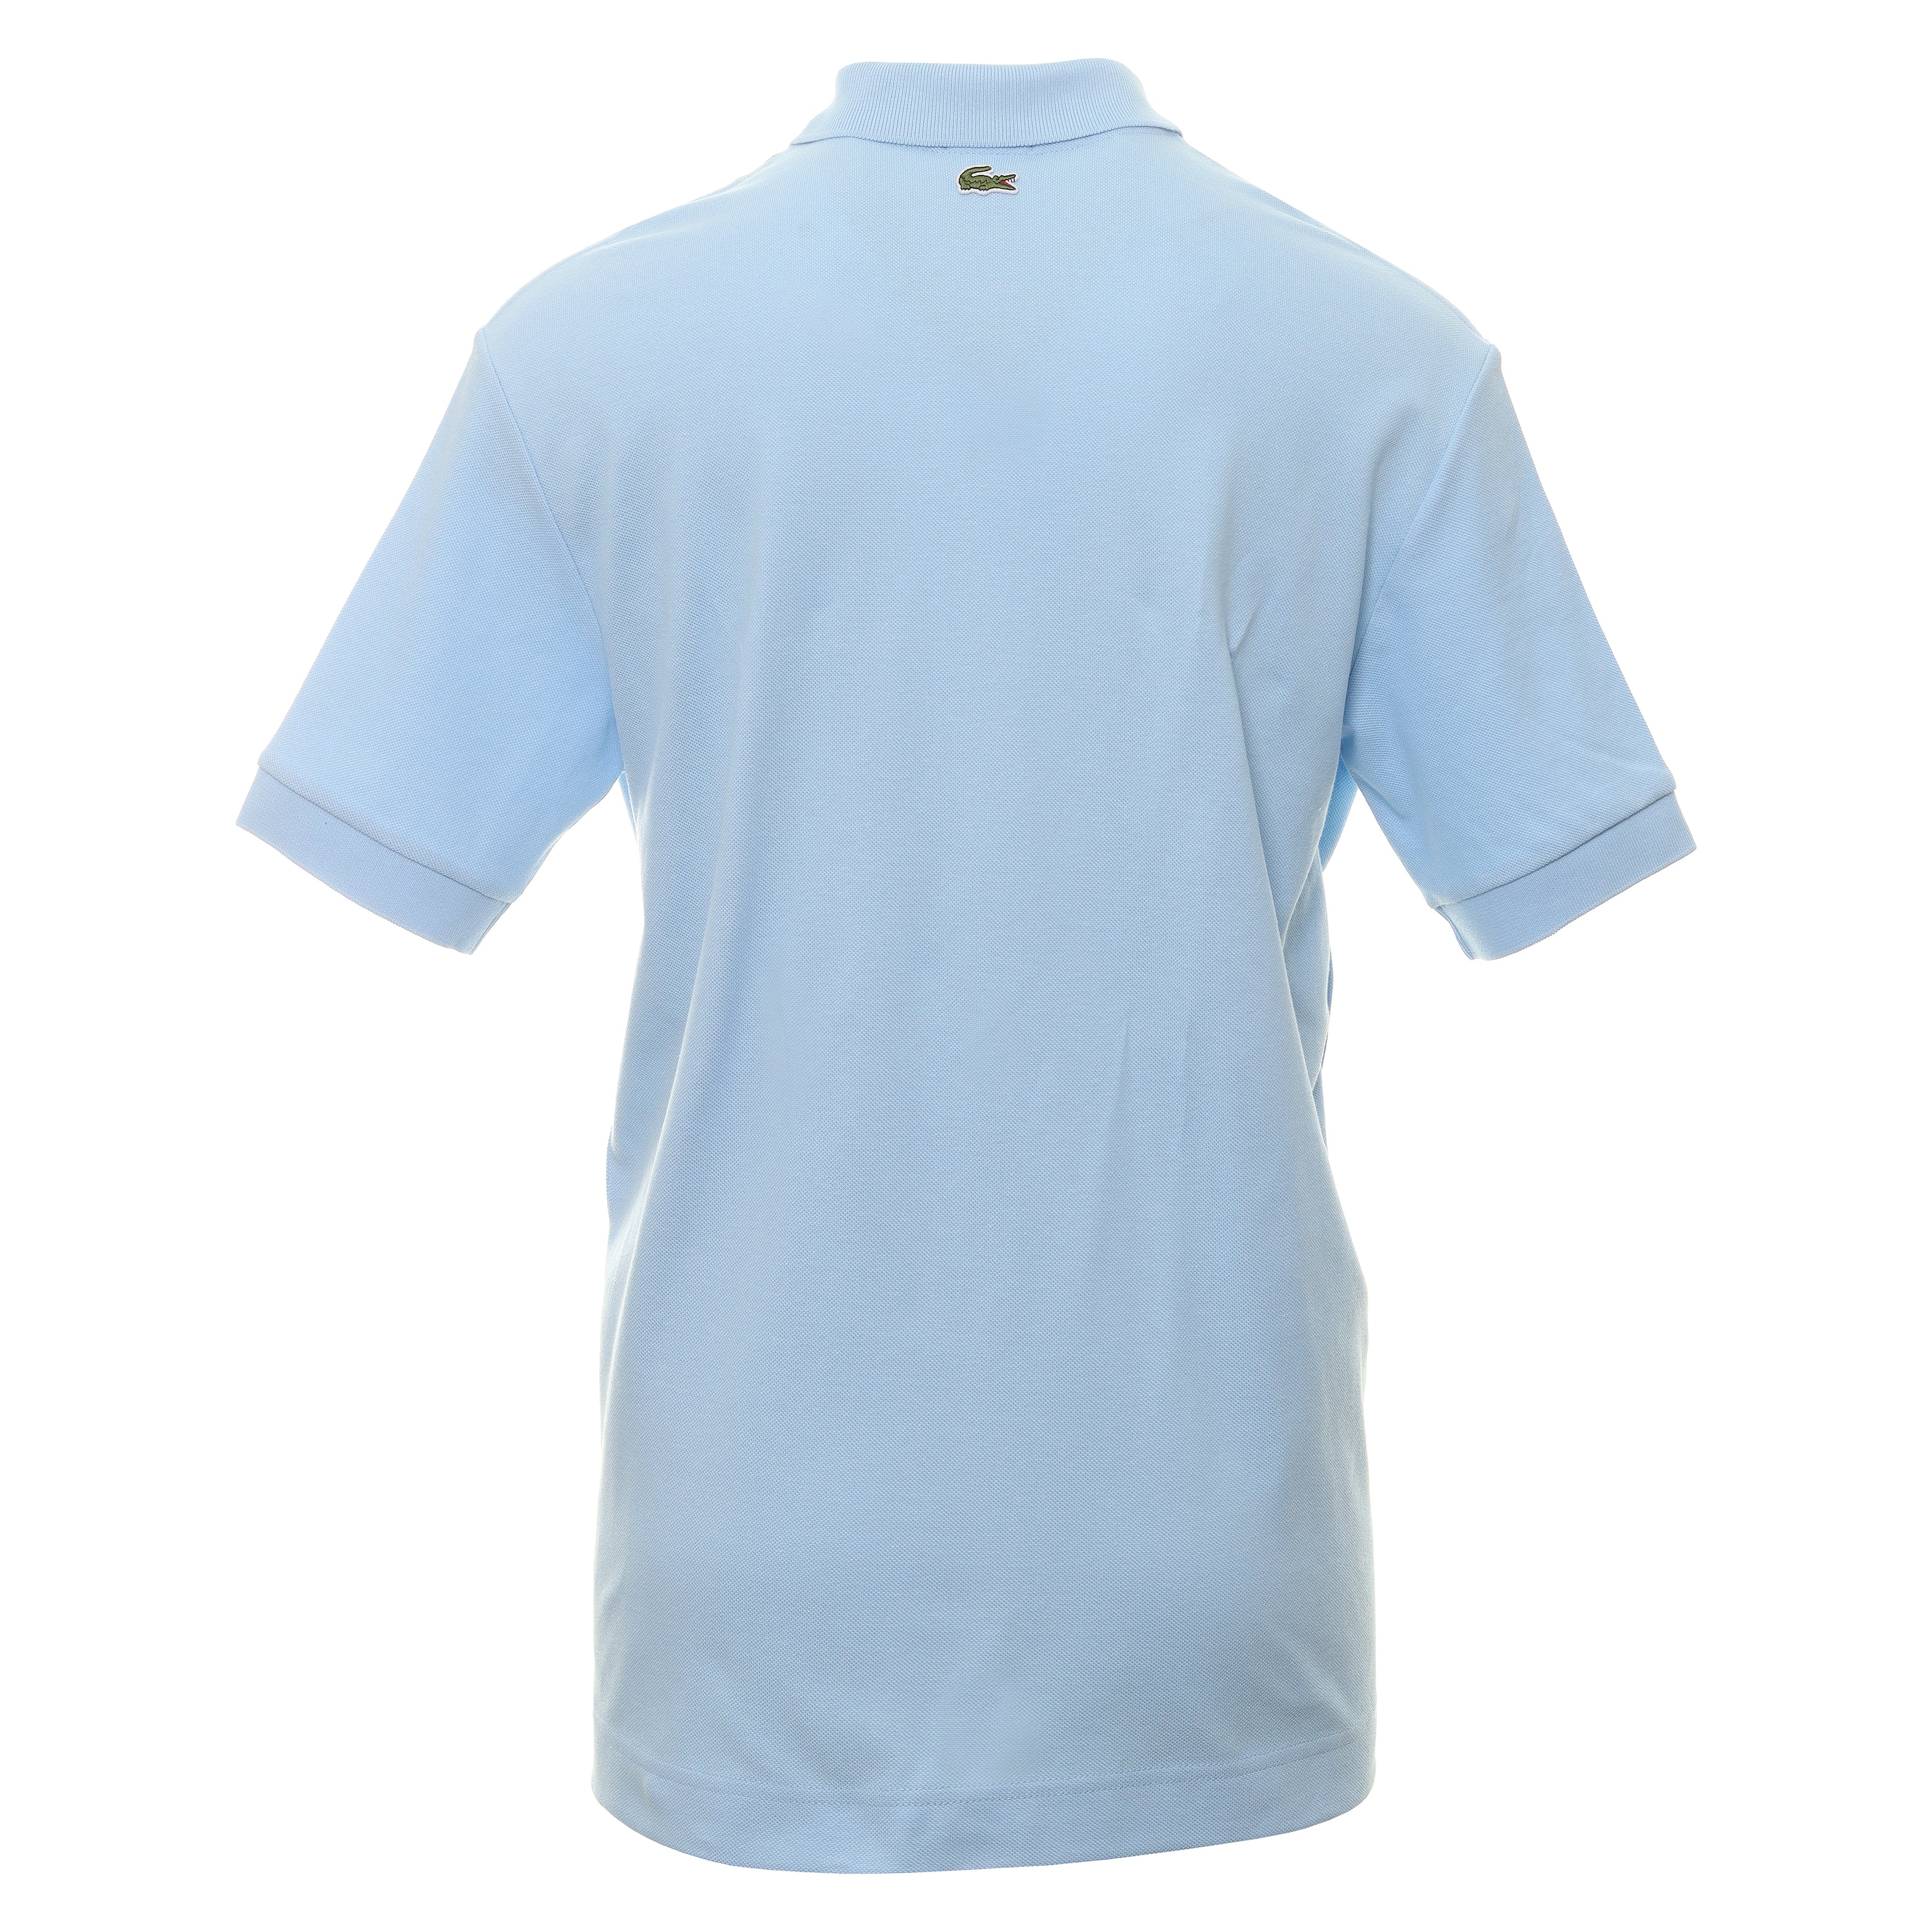 Lacoste Large Croc Pique Polo Shirt PH3922 Blue HBP | Function18 ...